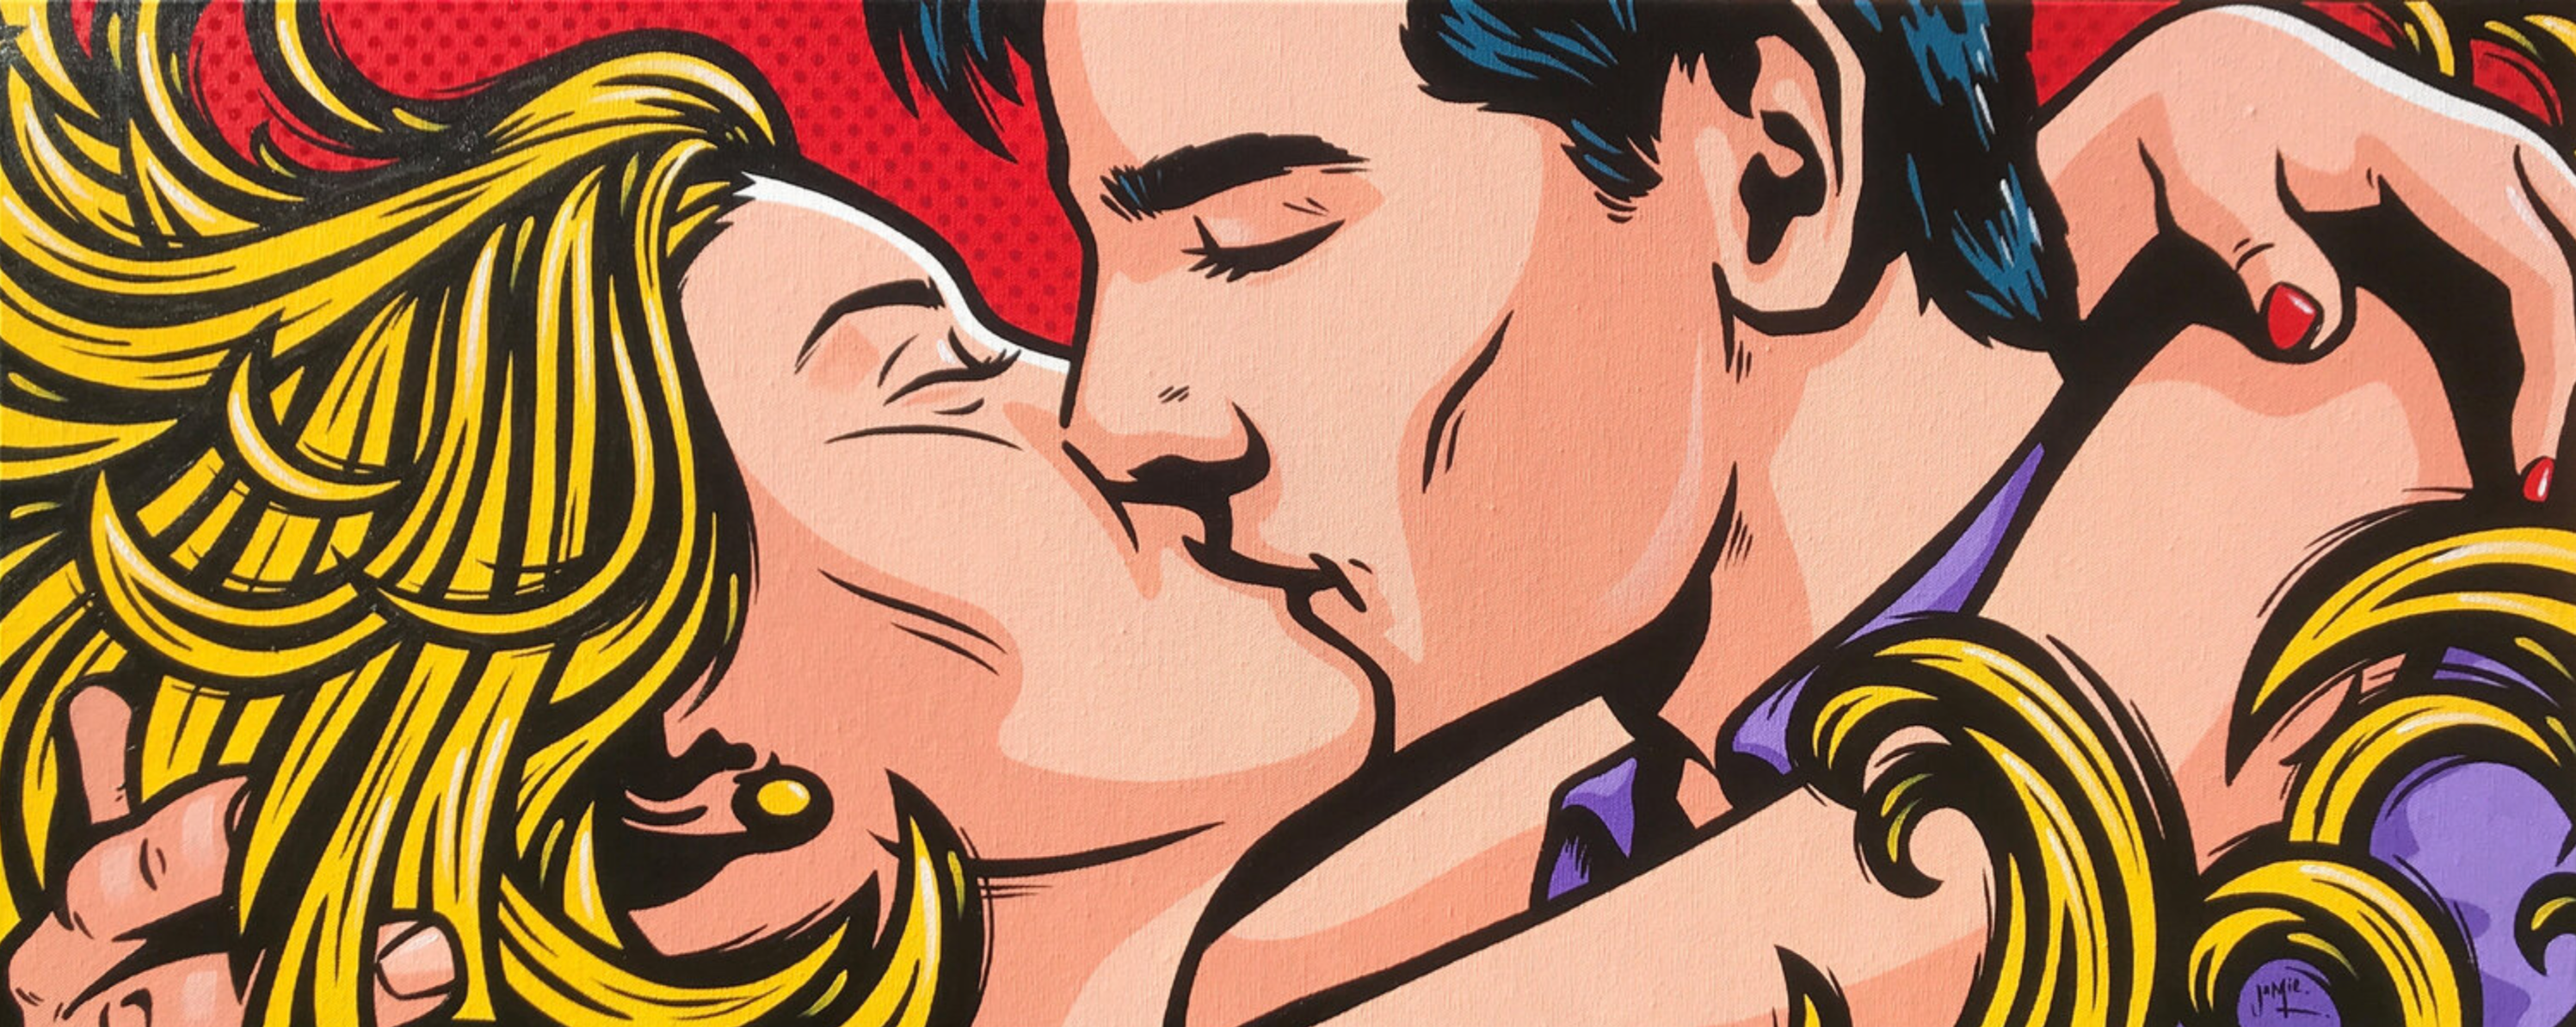 Pintura pop art "Jung Love" de Jamie Lee en estilo cómic con original diseño de una joven pareja abrazándose y besándose apasionadamente. El pelo rubio de la mujer la envuelve como llamas de pasión.